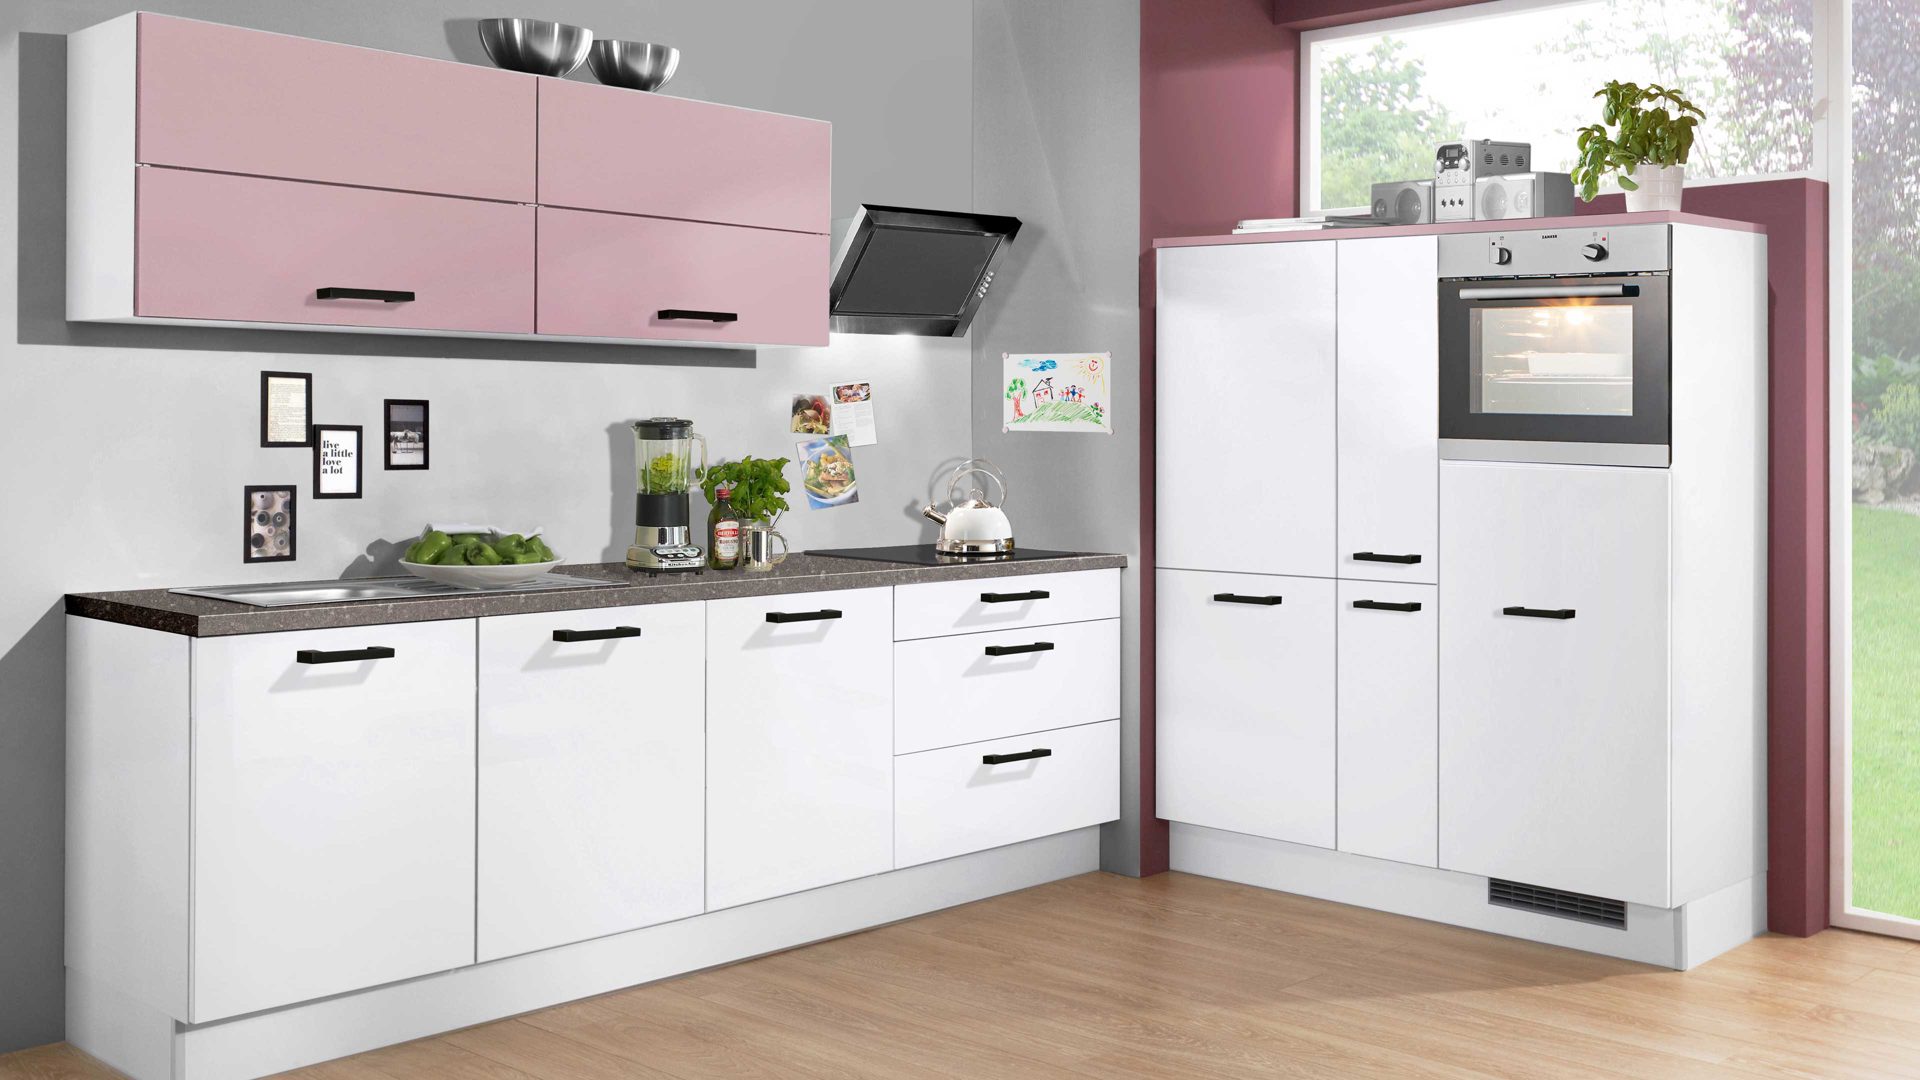 Einbauküche Pino küchen aus Holz in Pink pino Einbauküche inklusive Einbaugeräte Antikrosa & Weiß - zweizeilig